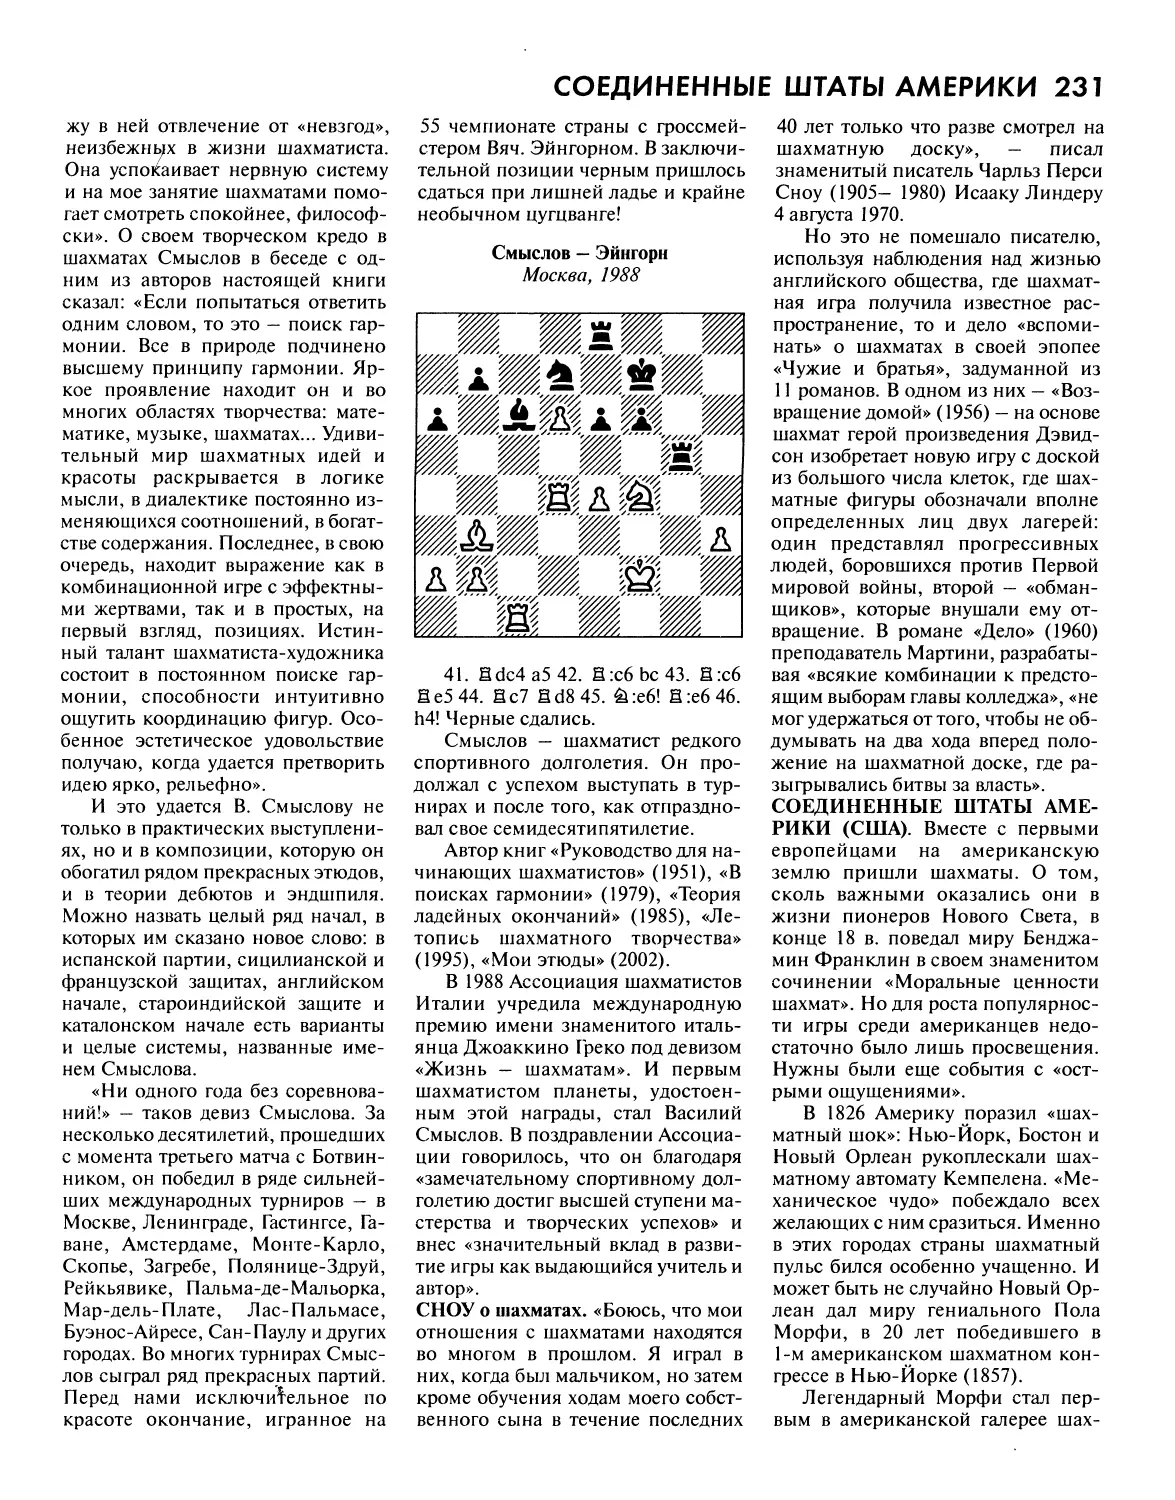 Сноу о шахматах
Соединенные Штаты Америки